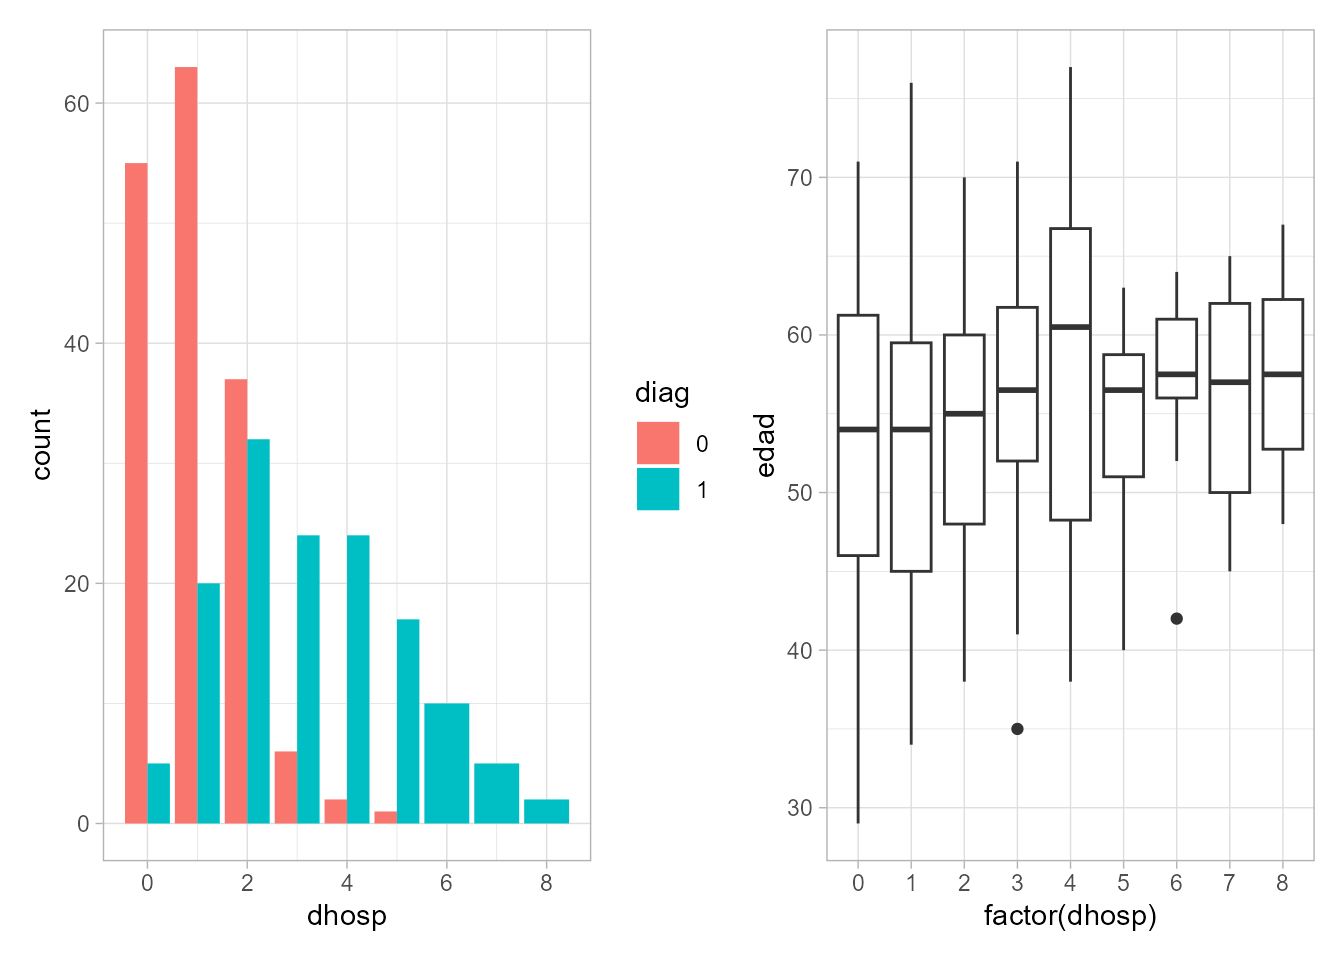 Gráfico de barras de $dhosp$ según tipo de diagnóstico (izquierda) y gráficos de cajas de $edad$ según el número de días de hospitalización (derecha).